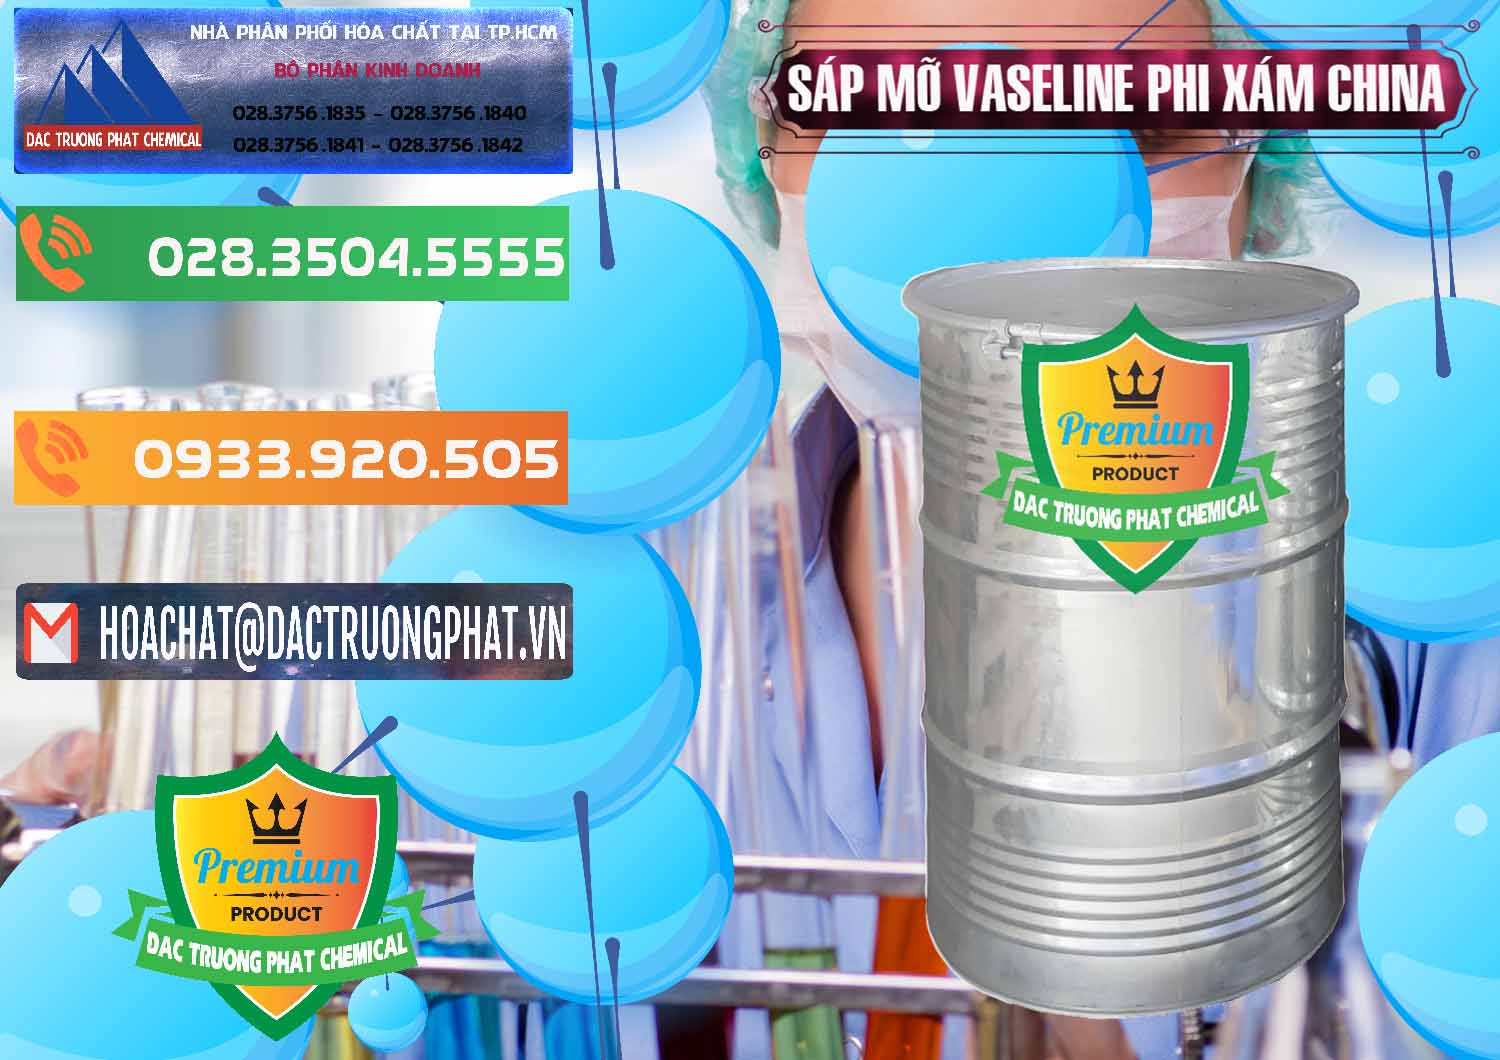 Cty kinh doanh và bán Sáp Mỡ Vaseline Phi Xám Trung Quốc China - 0291 - Đơn vị cung cấp _ phân phối hóa chất tại TP.HCM - hoachatxulynuoc.com.vn